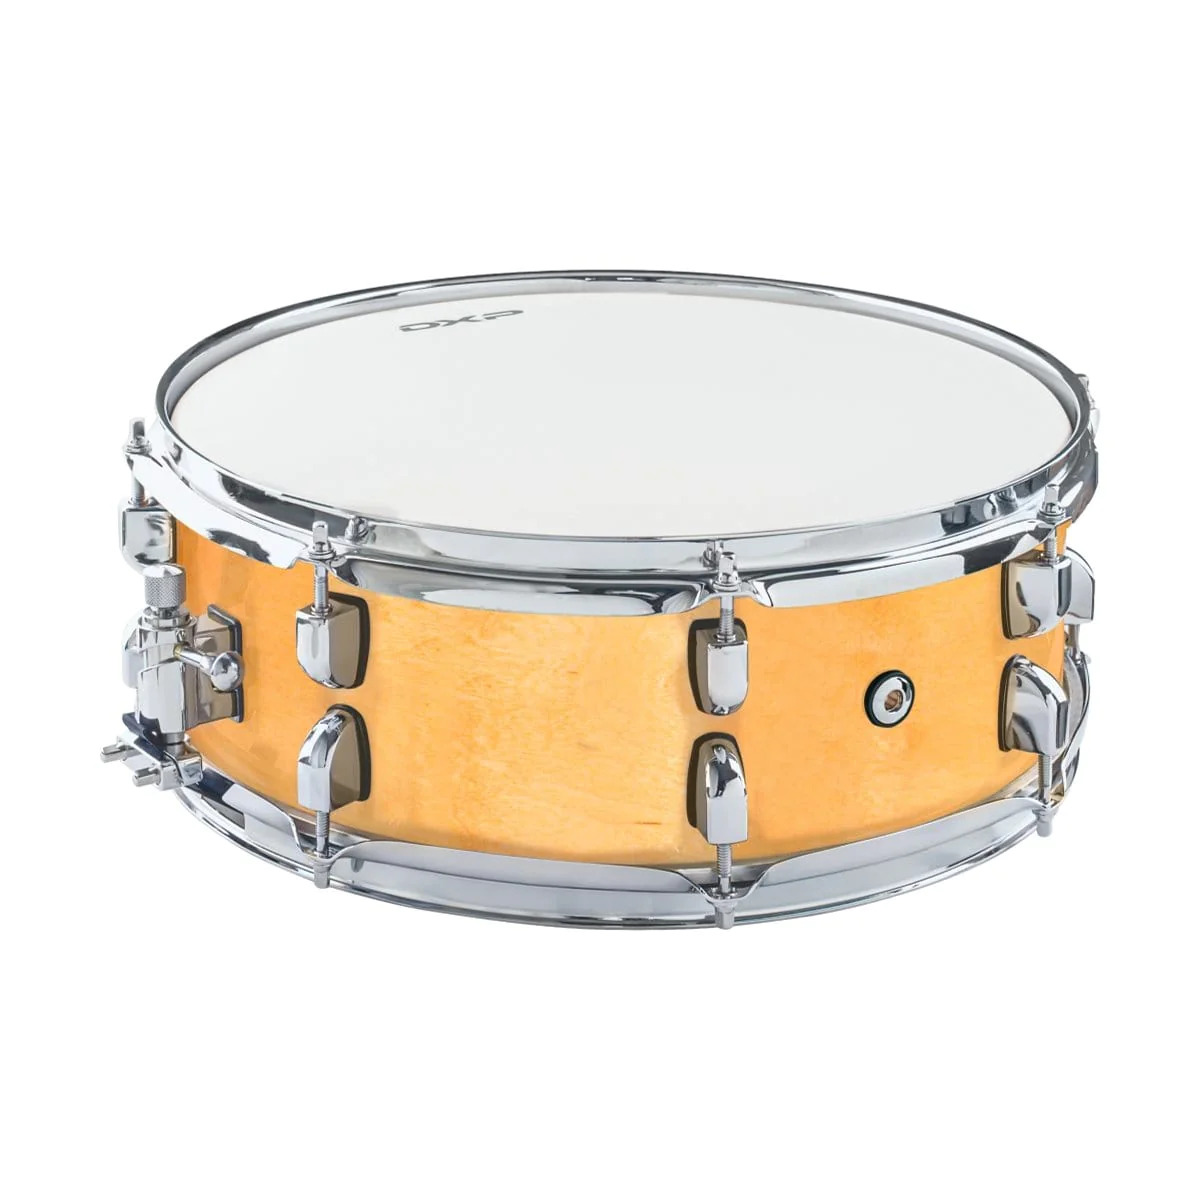 DXP 14 x 5 Maple Snare Drum